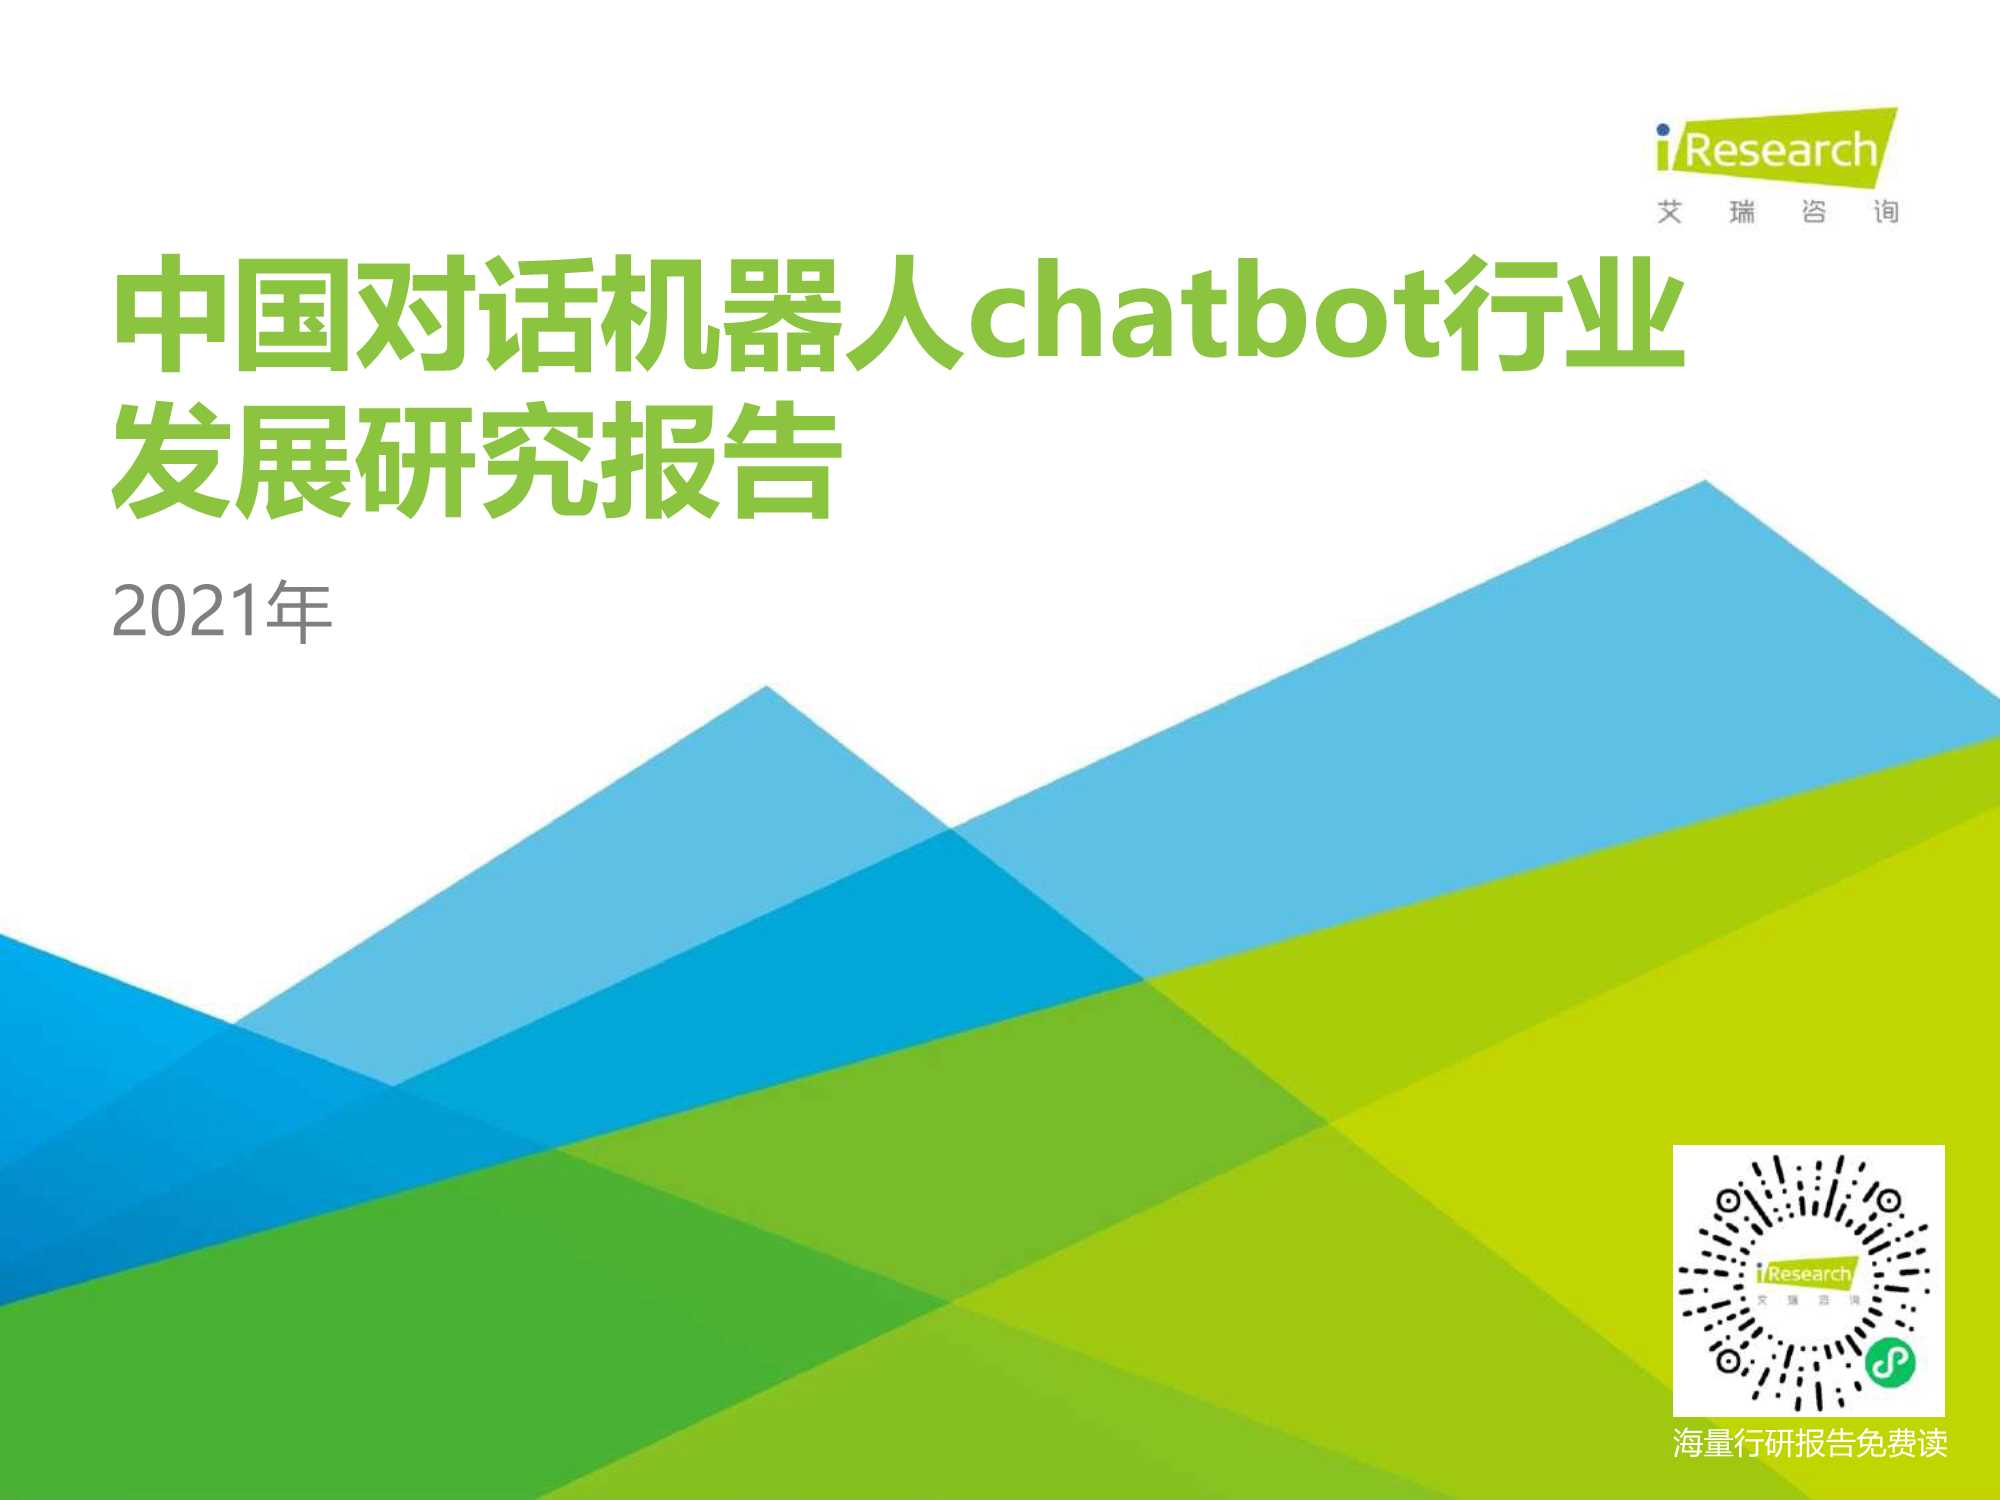 艾瑞咨询-2021年中国对话机器人chatbot行业发展研究报告-2021.06-64页